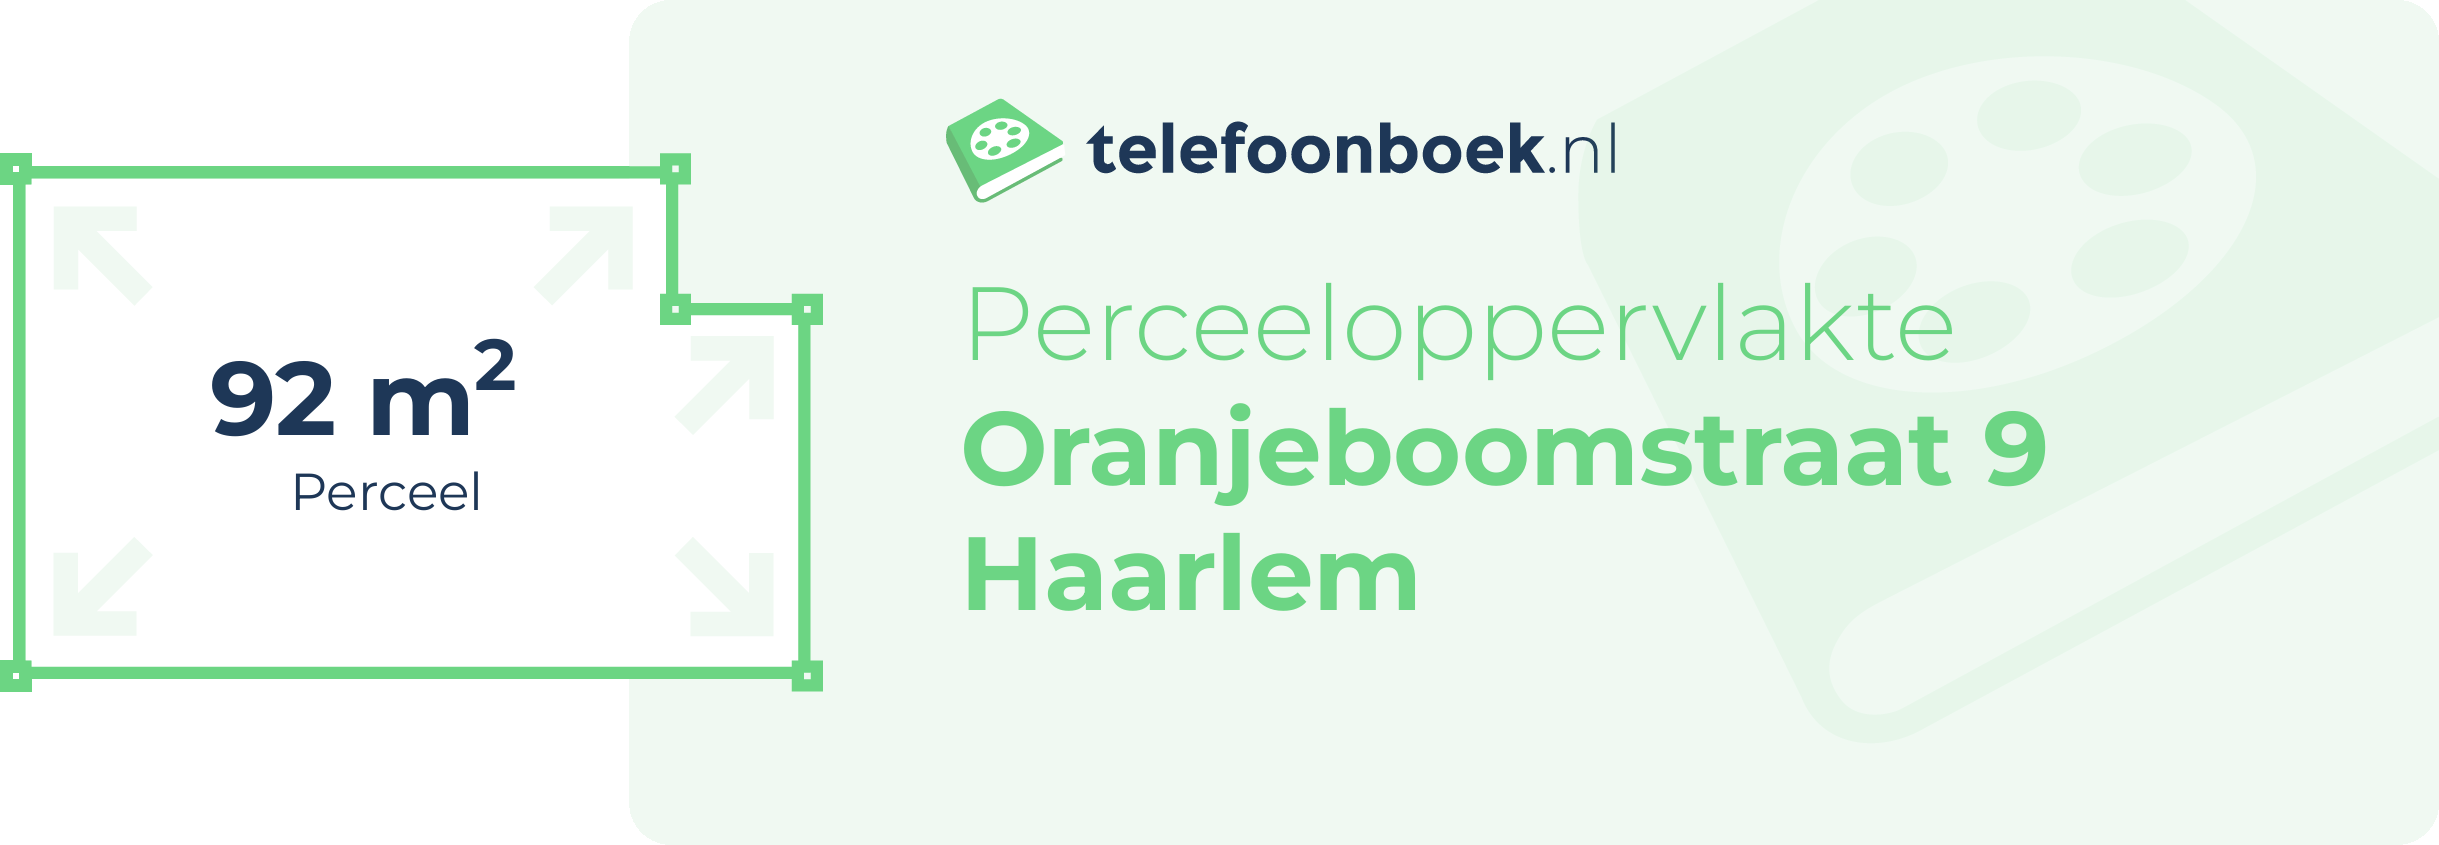 Perceeloppervlakte Oranjeboomstraat 9 Haarlem